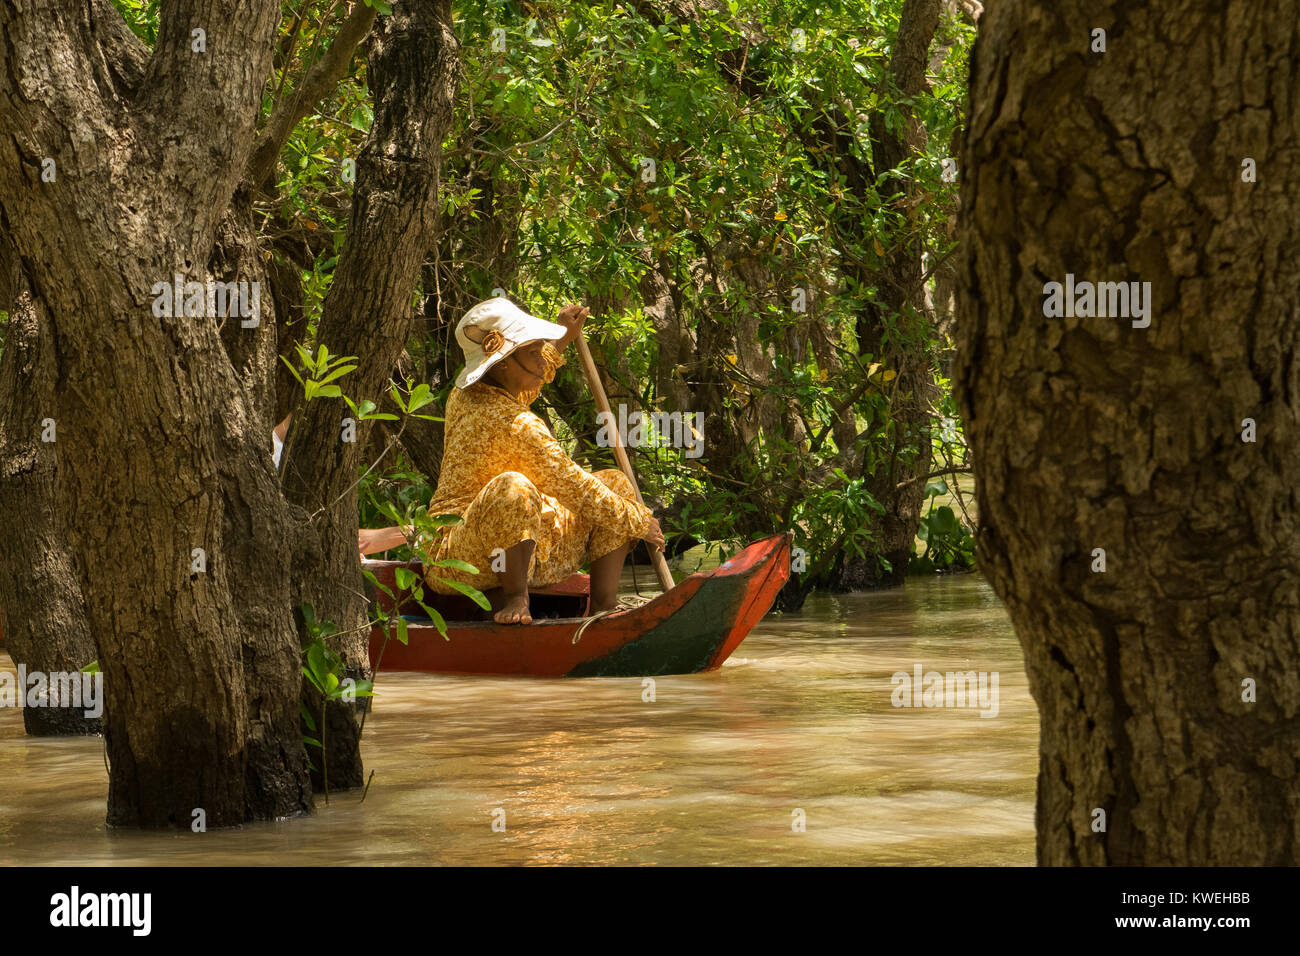 Cambodgienne asiatique femme portant un chapeau jaune et une pagaie canoë, explorer la forêt flottante forêt inondée à Kampong Phluk, lac Tonle Sap au Cambodge Banque D'Images